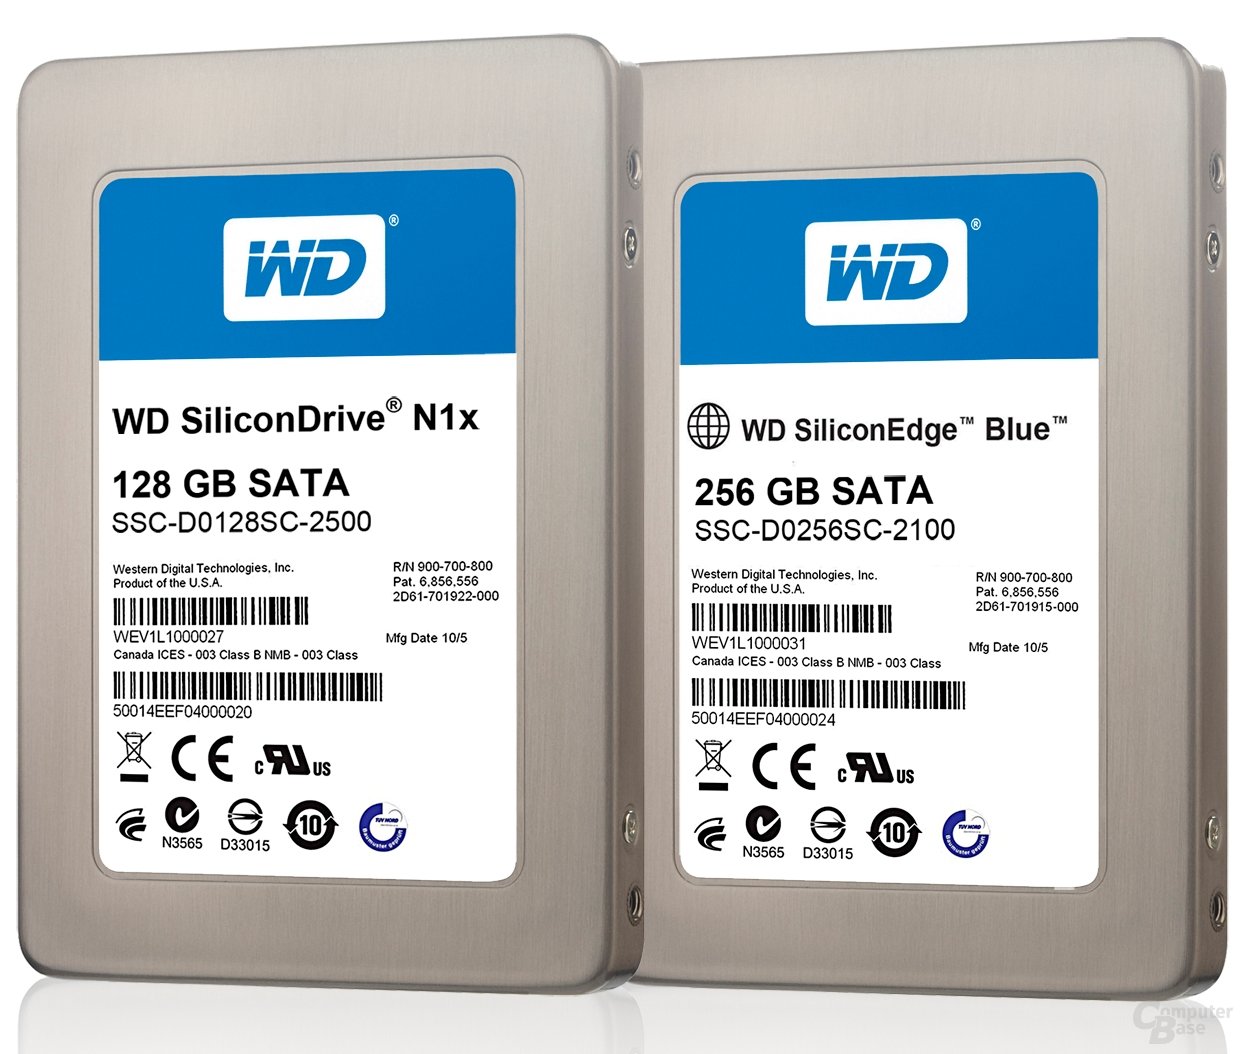 Western Digital SiliconEdge Blue 256 GB und SiliconDrive N1x 128 GB